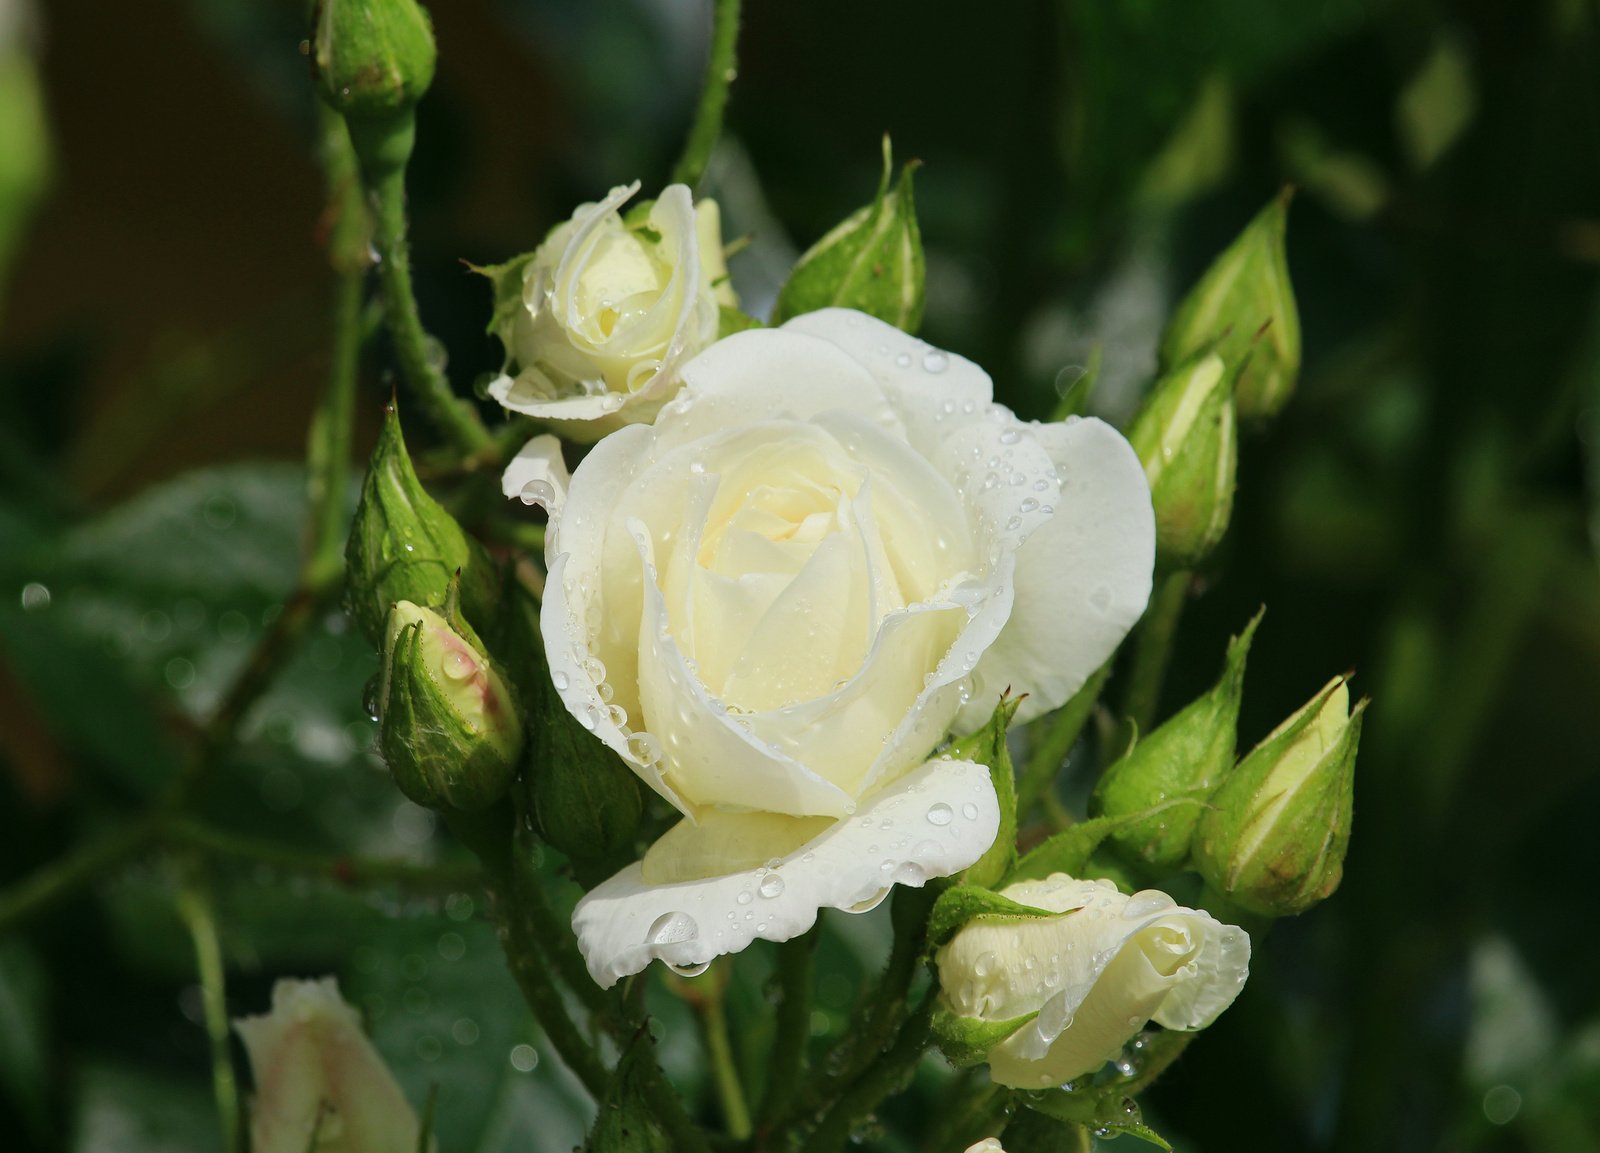 IMG 4433 rózsa